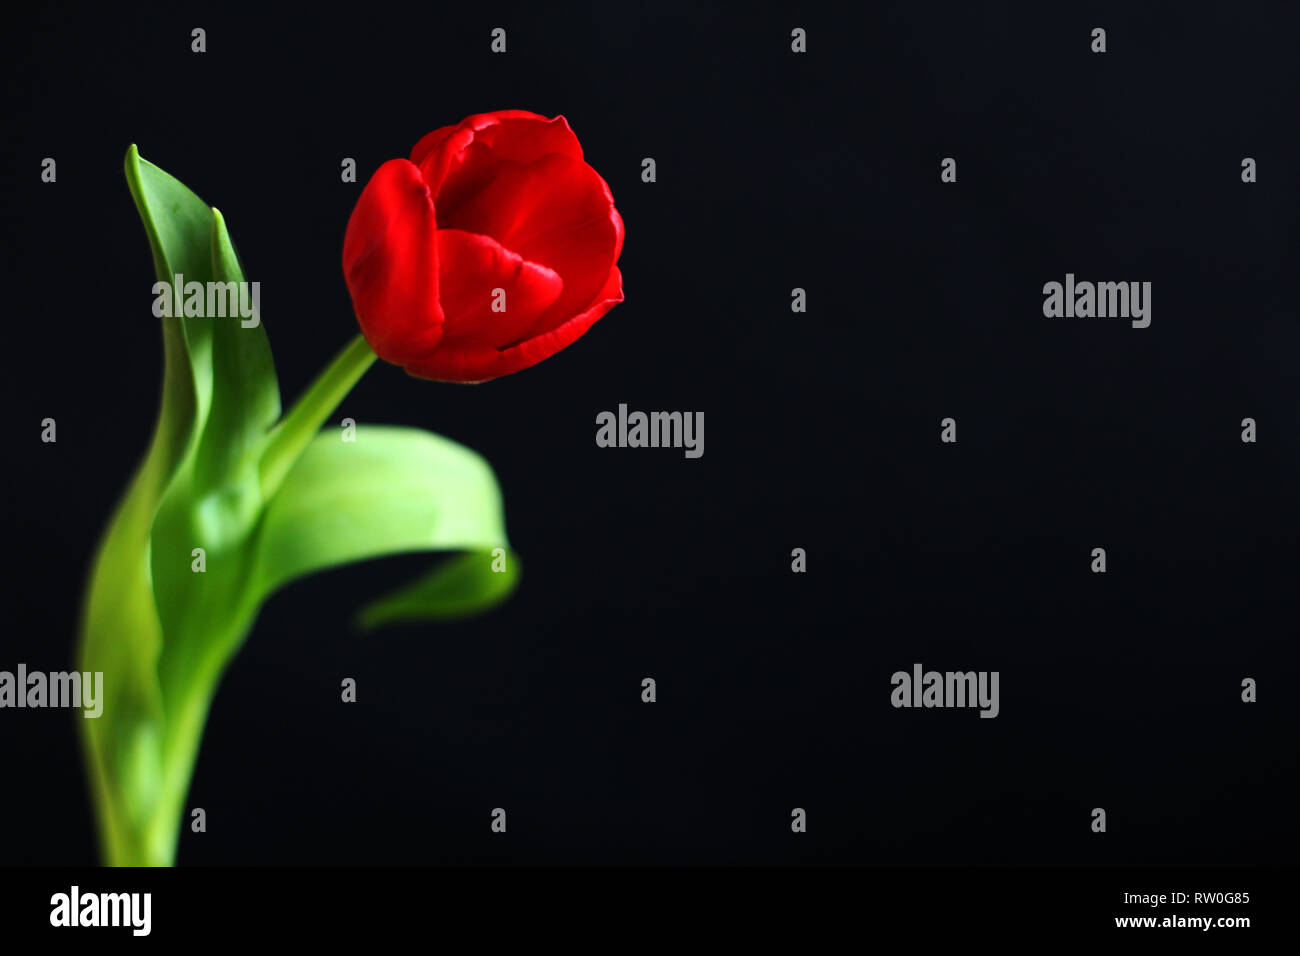 Isolierte rote Tulpe, selektiver Fokus, schwarzer Hintergrund, kostenlose Kopie Raum Stockfoto